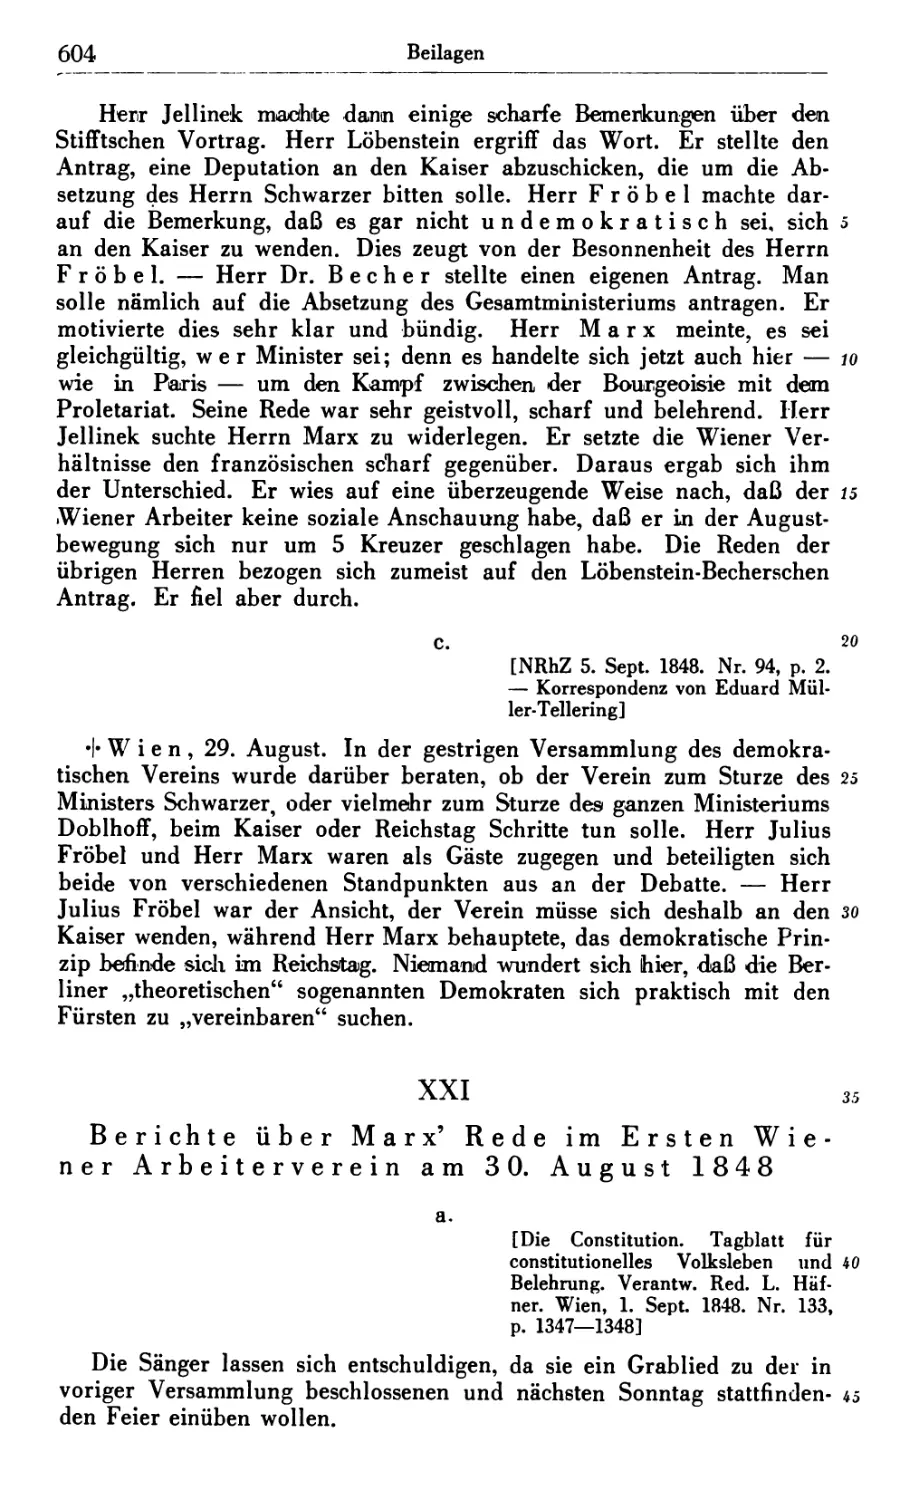 XXI. Berichte über Marx’ Rede im Ersten Wiener Arbeiterverein am 30. August 1848